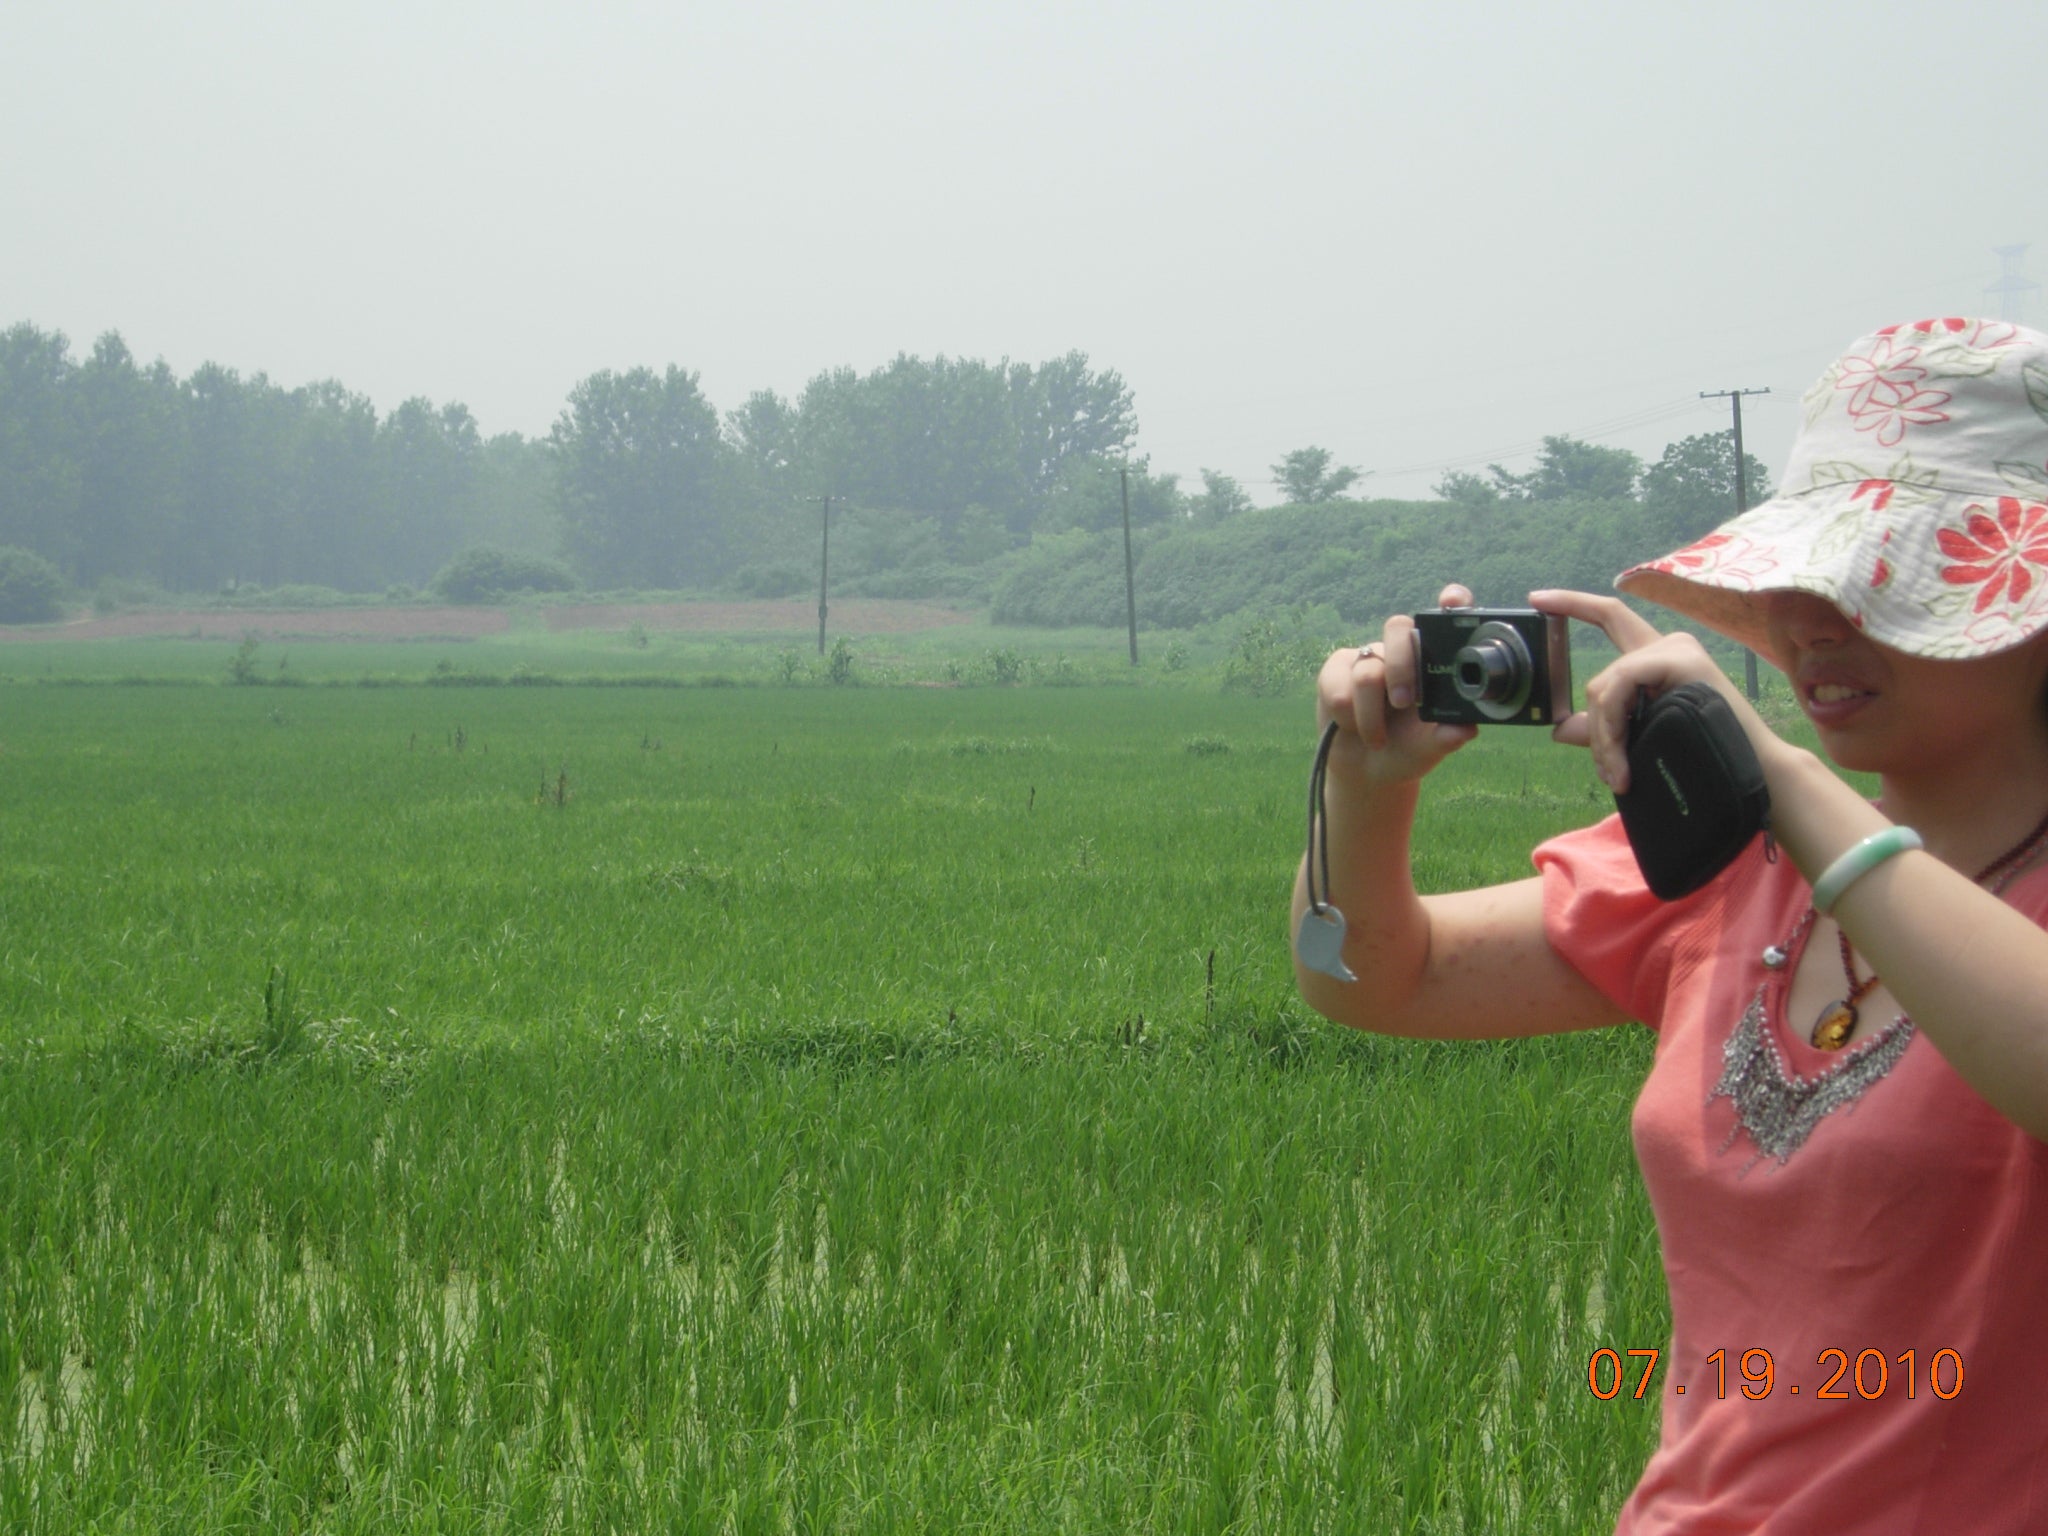 Rural land growing organic certified rice in Yangzhou city, Jiangsu province